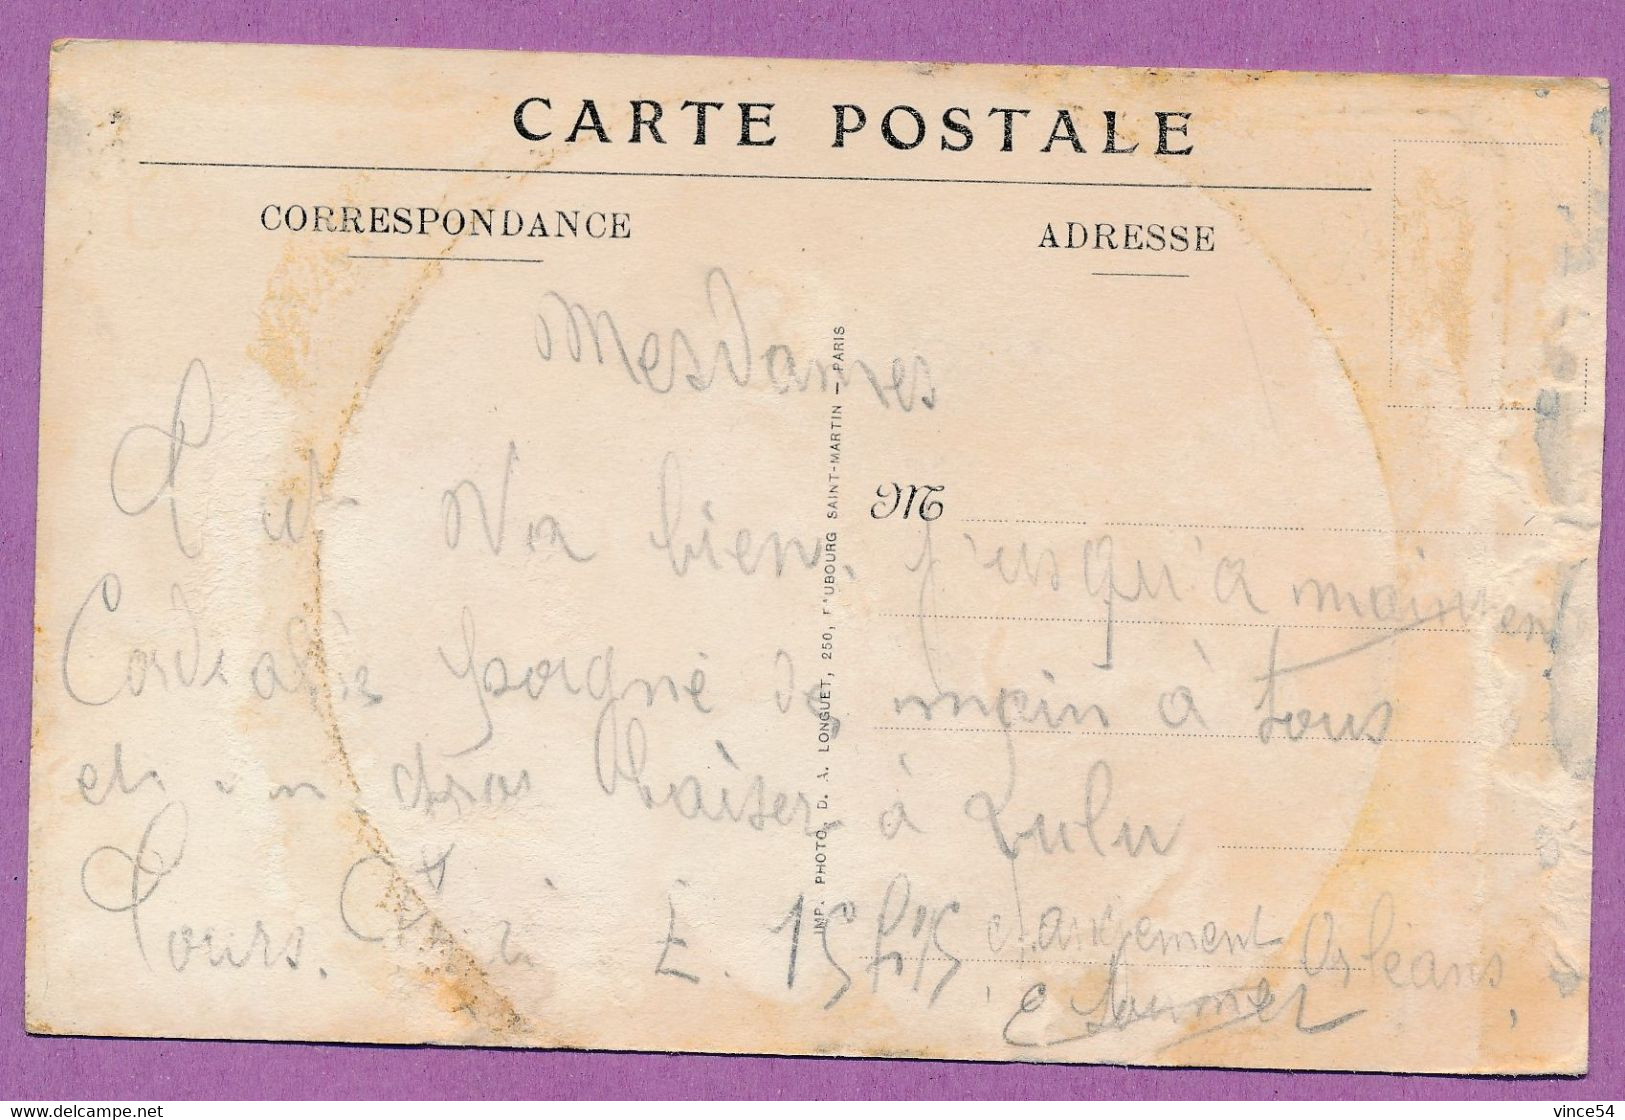 GRANDE GUERRE 1914-1917 - VIC-SUR-AISNE - Place De La Mairie (animation) - Vic Sur Aisne